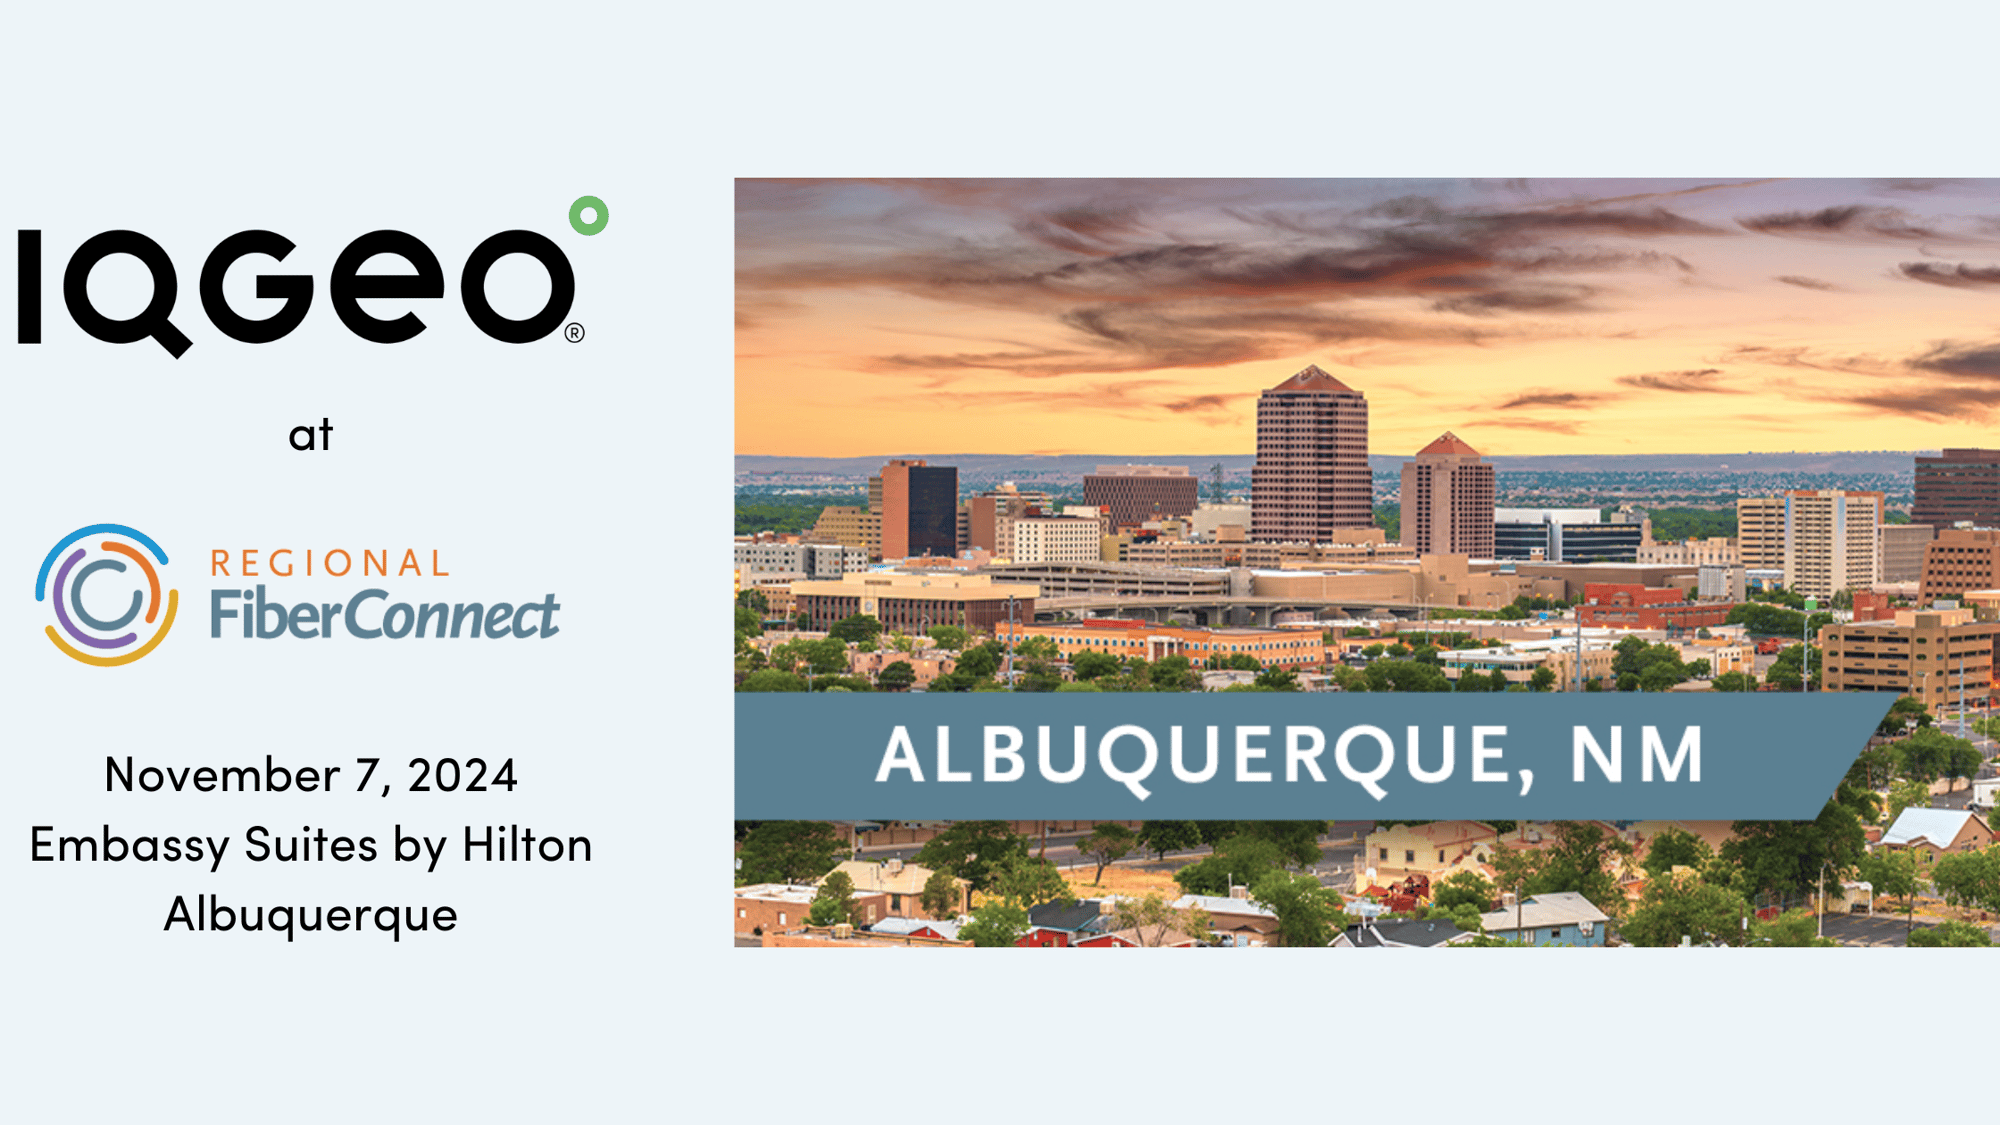 IQGeo at the Regional Fiber Connect of Albuquerque, NM